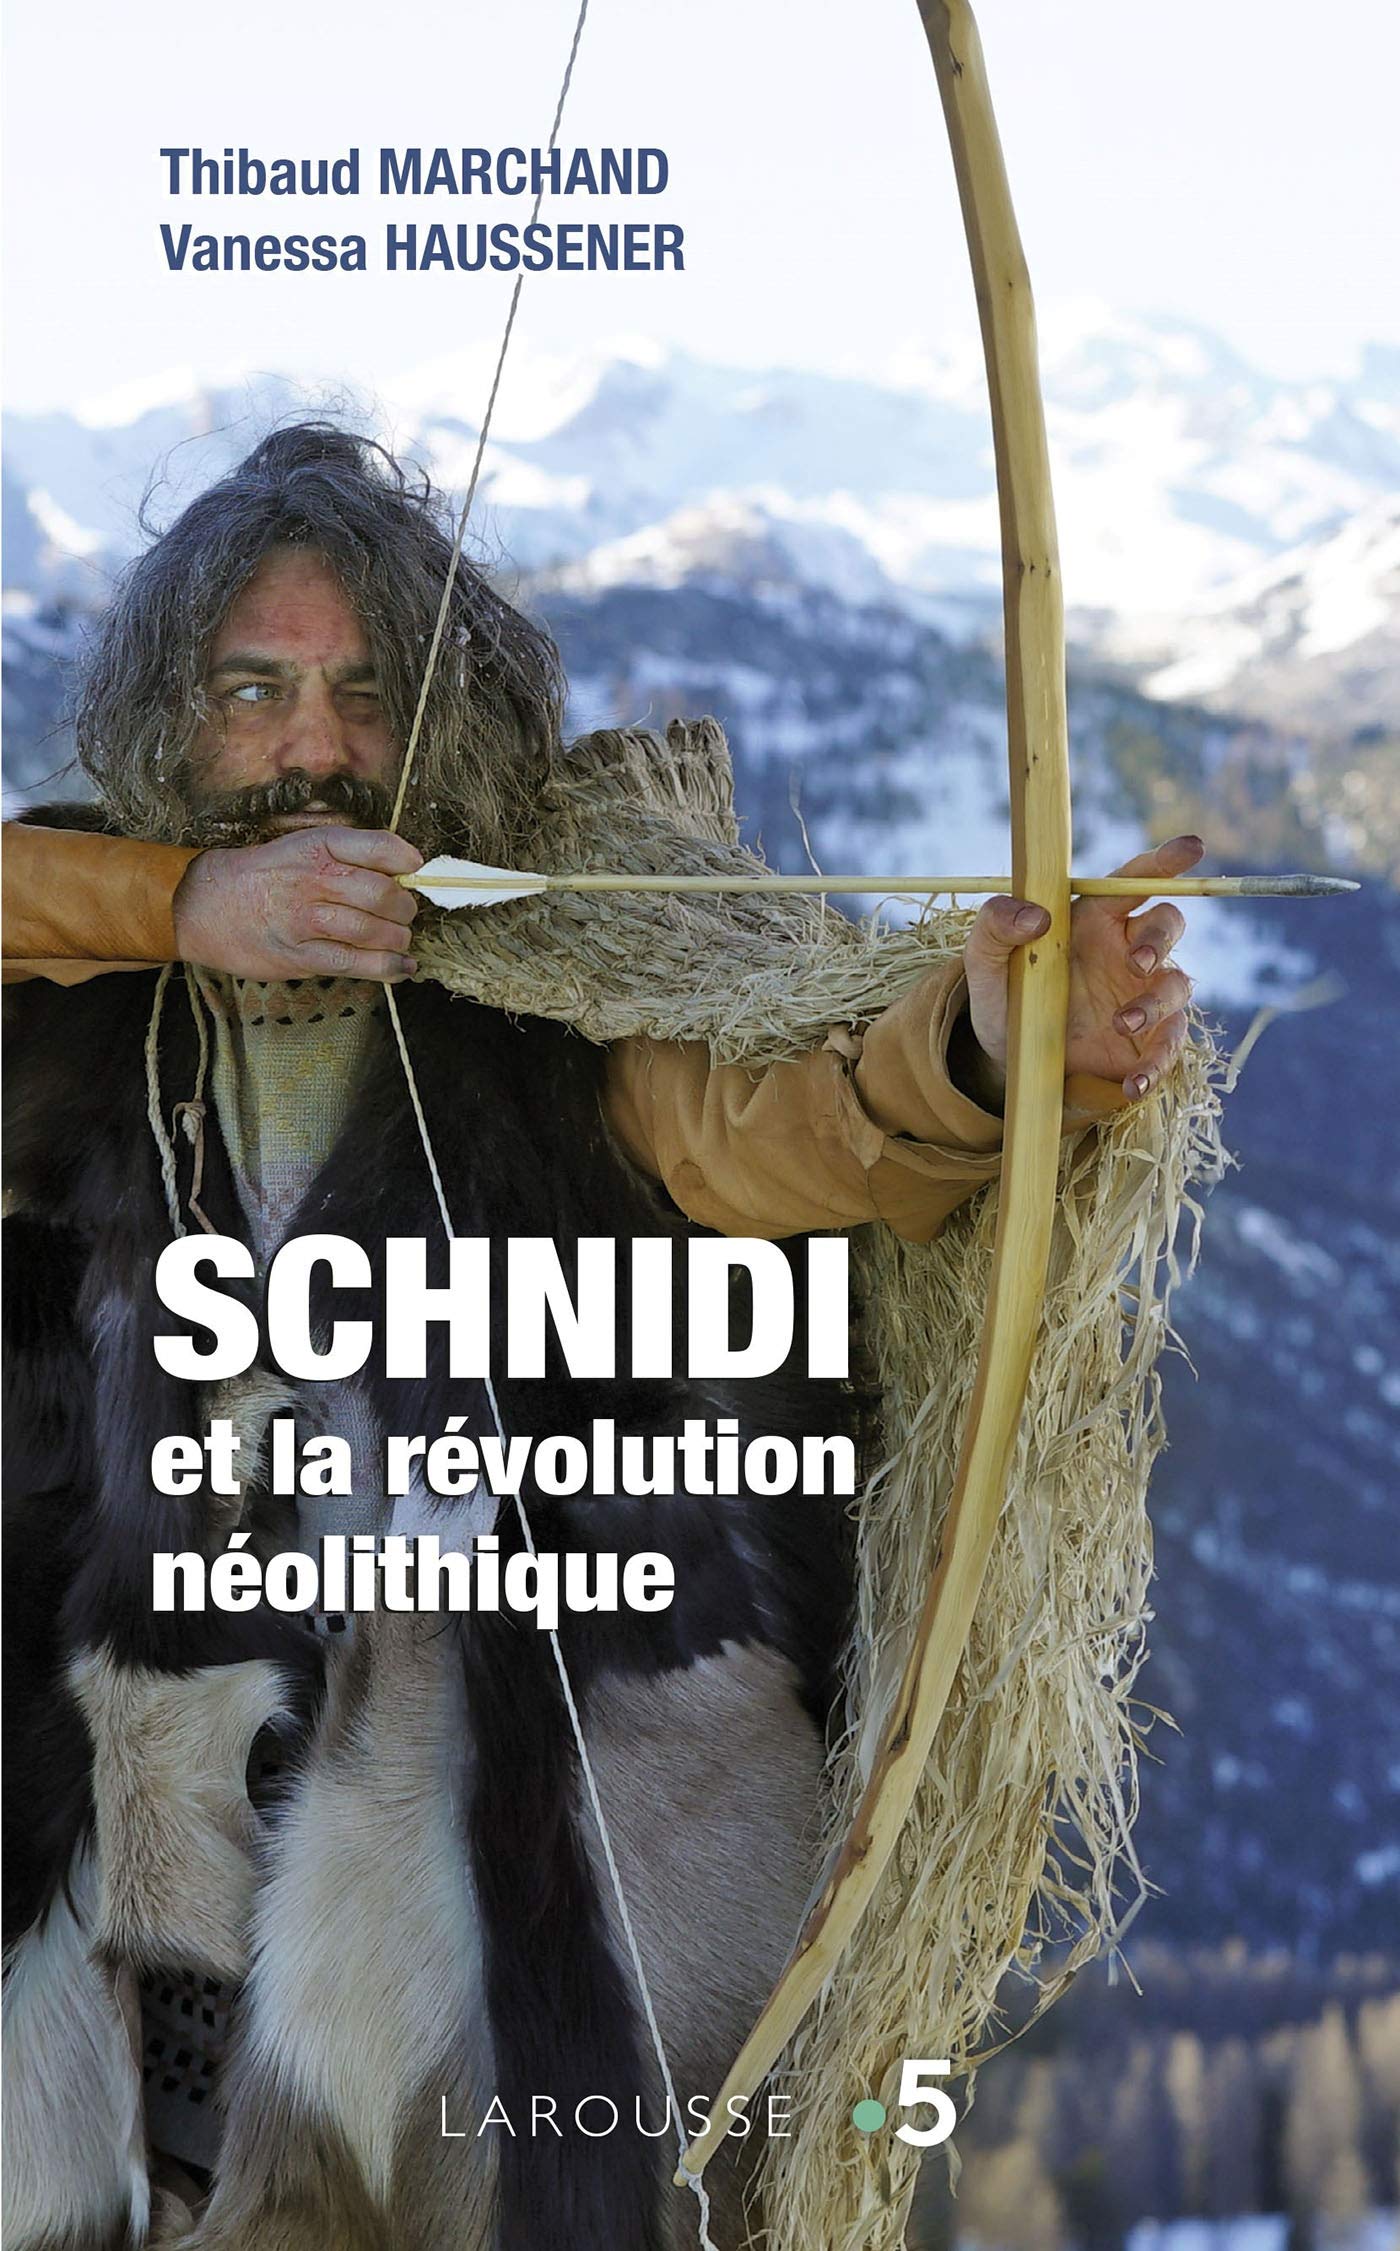 Schnidi et la révolution néolithique, 2020, 288 p.